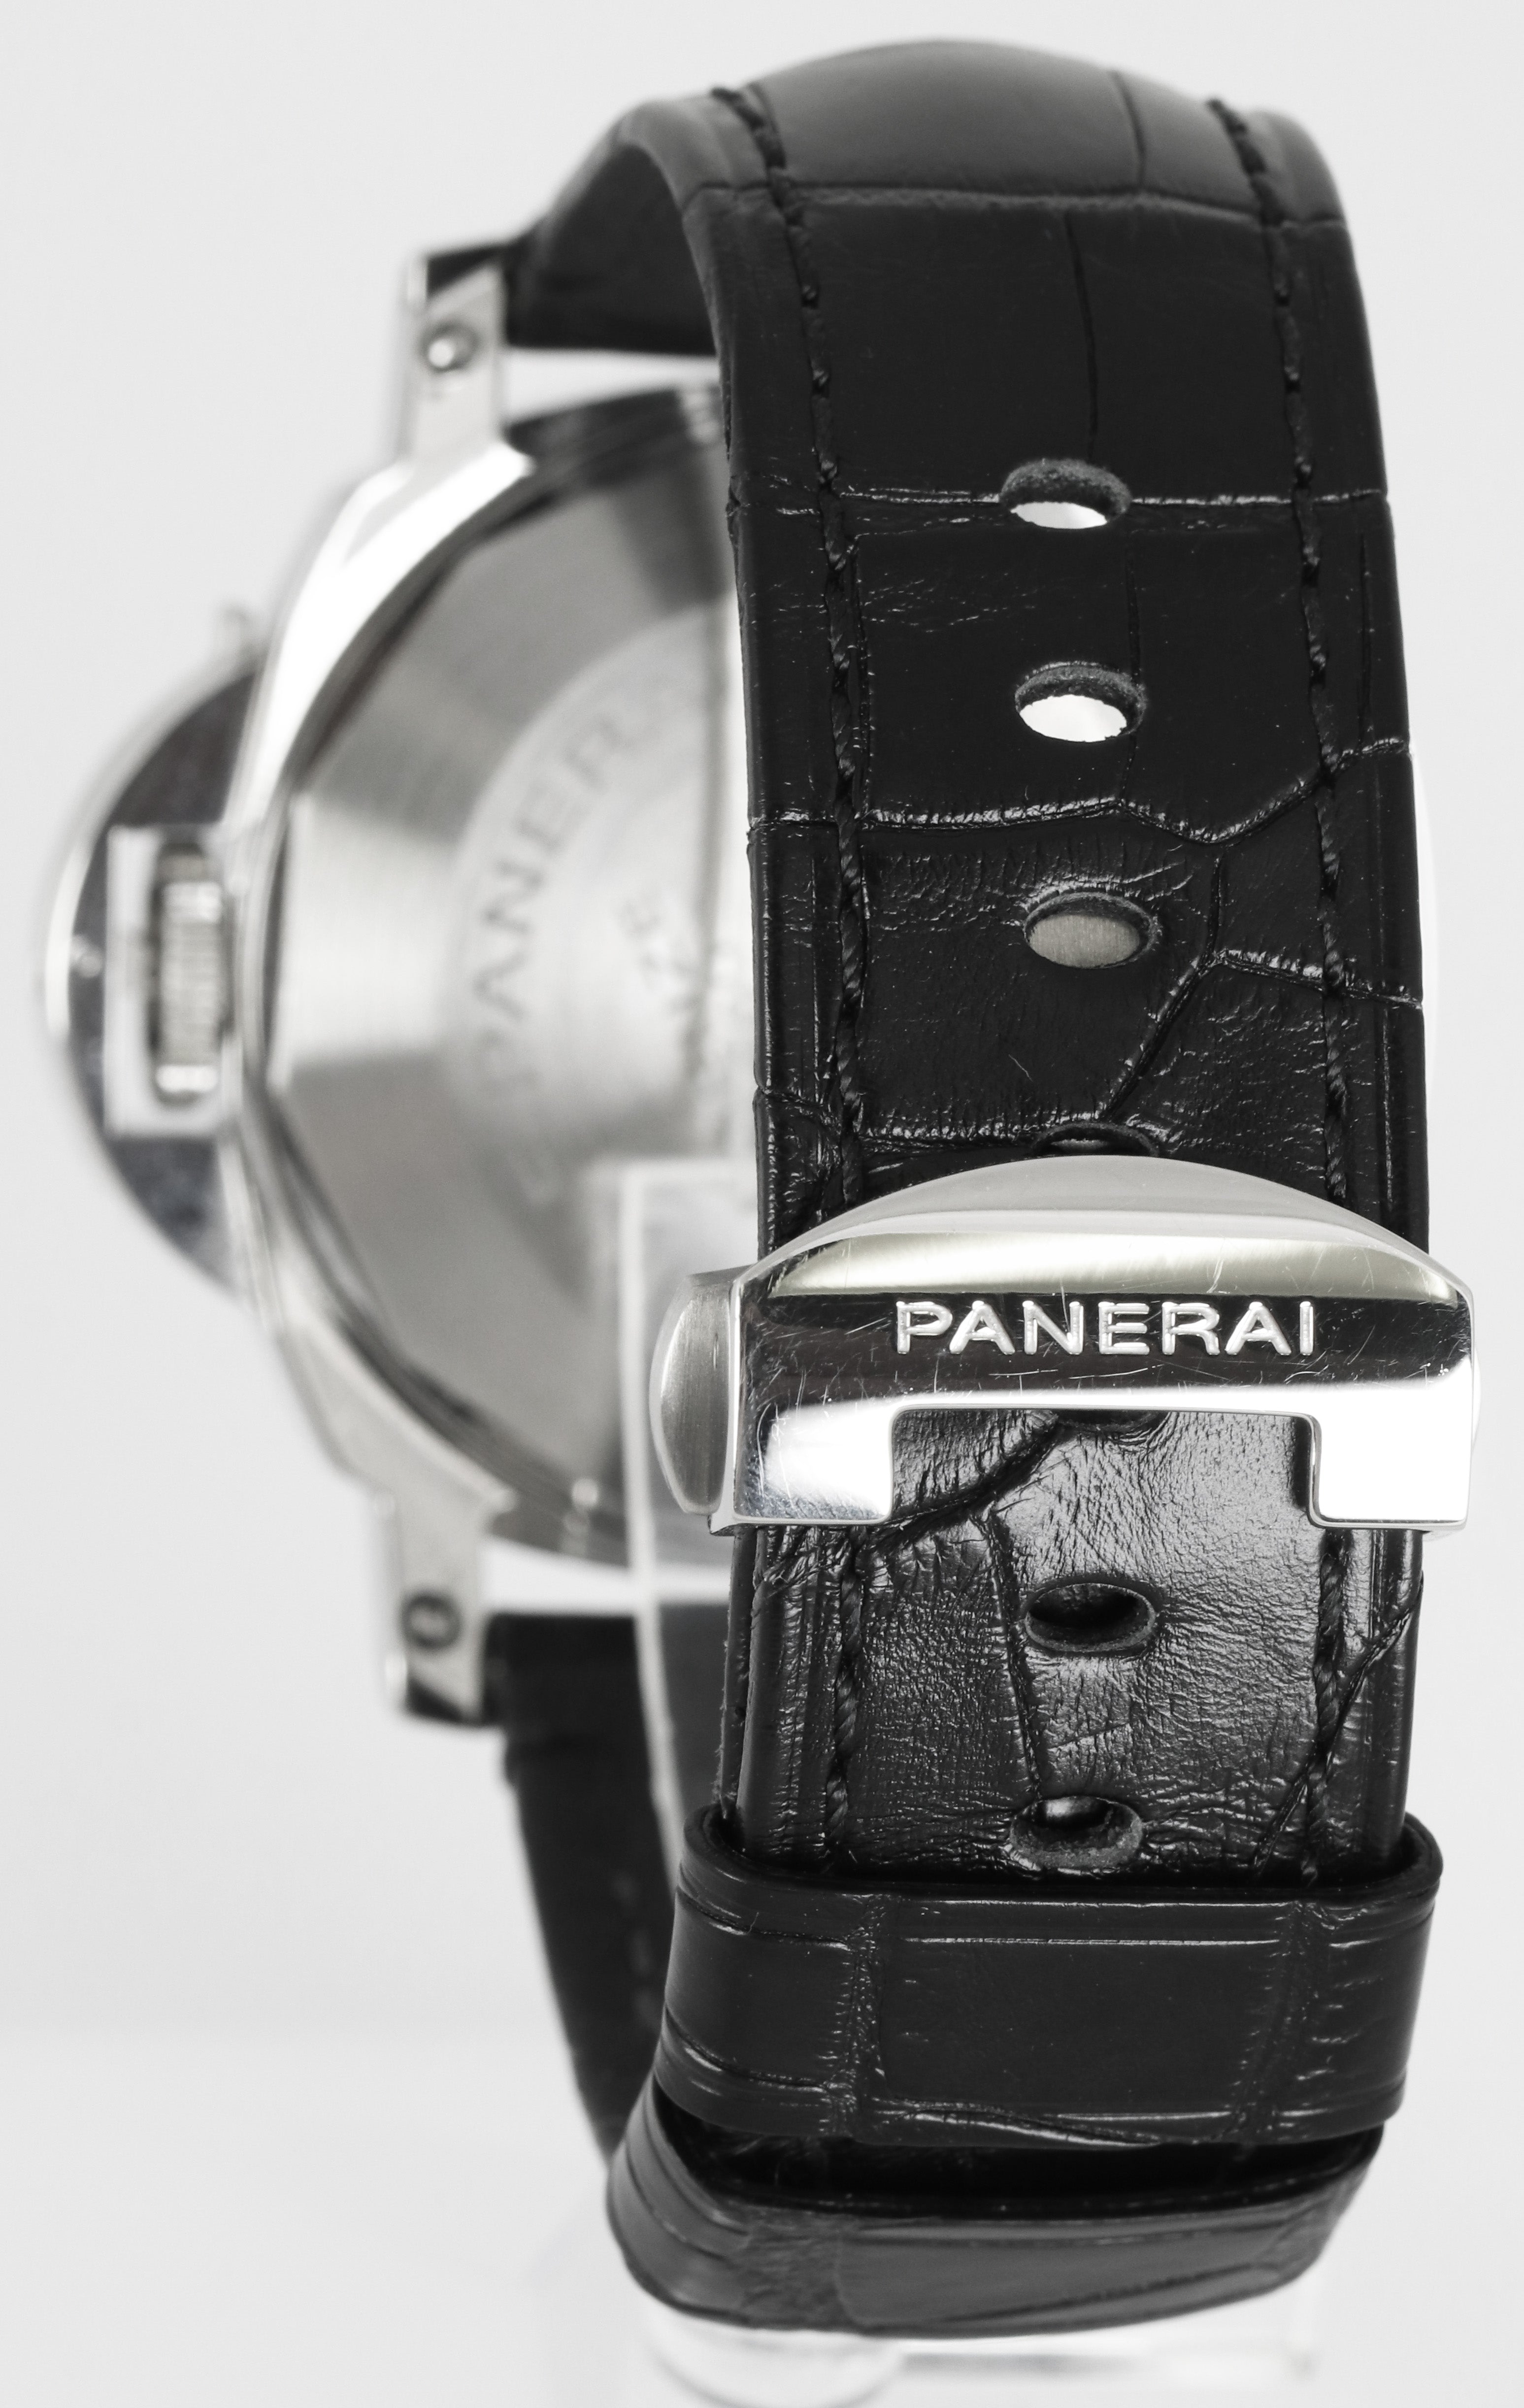 Panerai PAM 88 Luminor GMT Date Automatic Black 44mm Leather Watch PAM00088